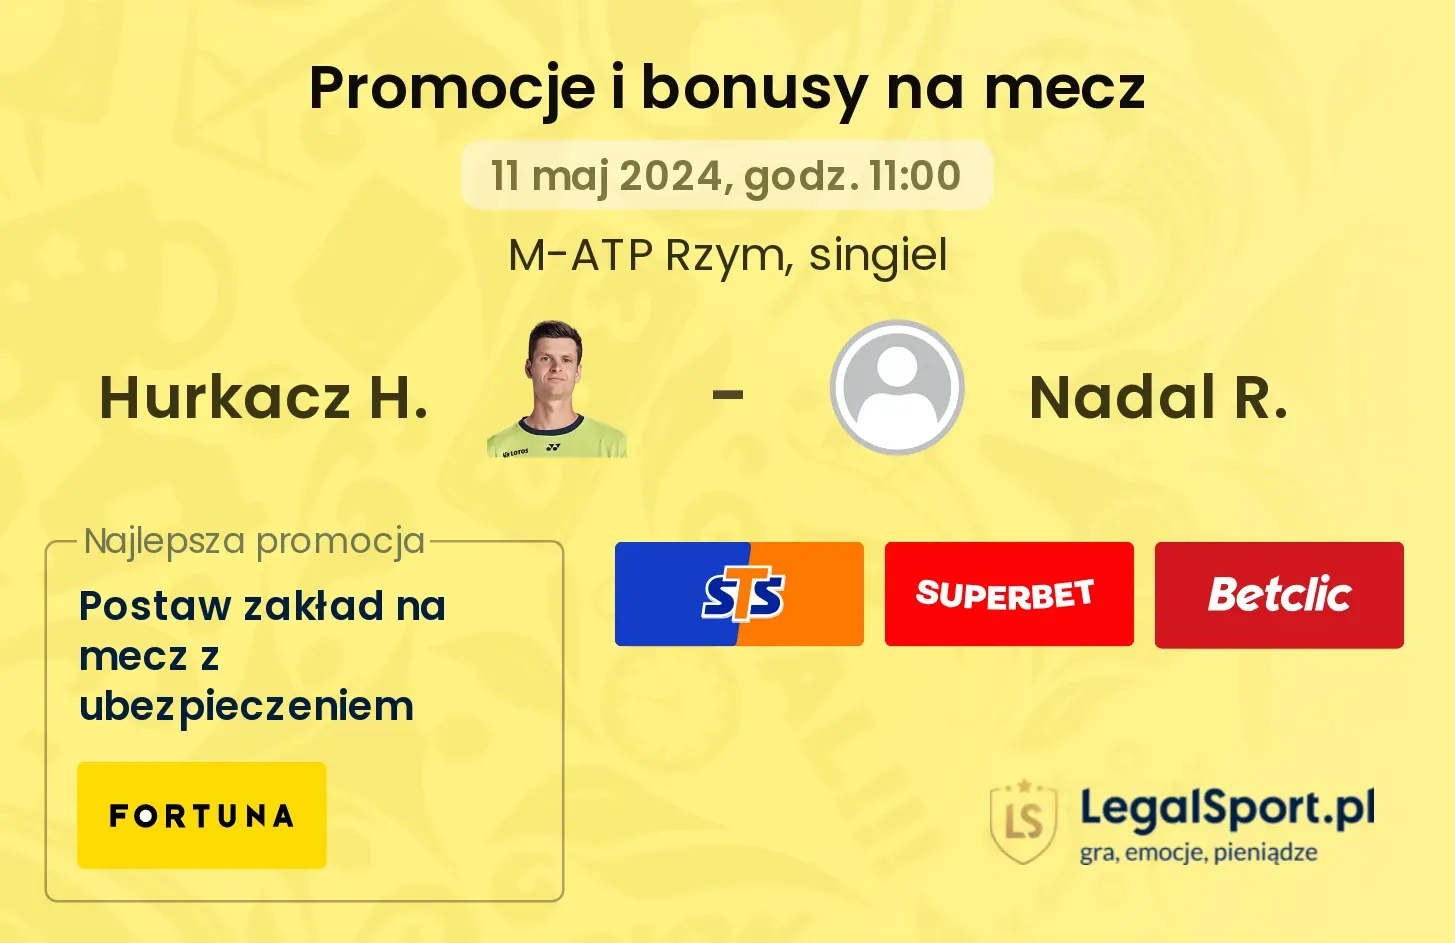 Hurkacz H. - Nadal R. bonusy i promocje (11.05, 11:00)